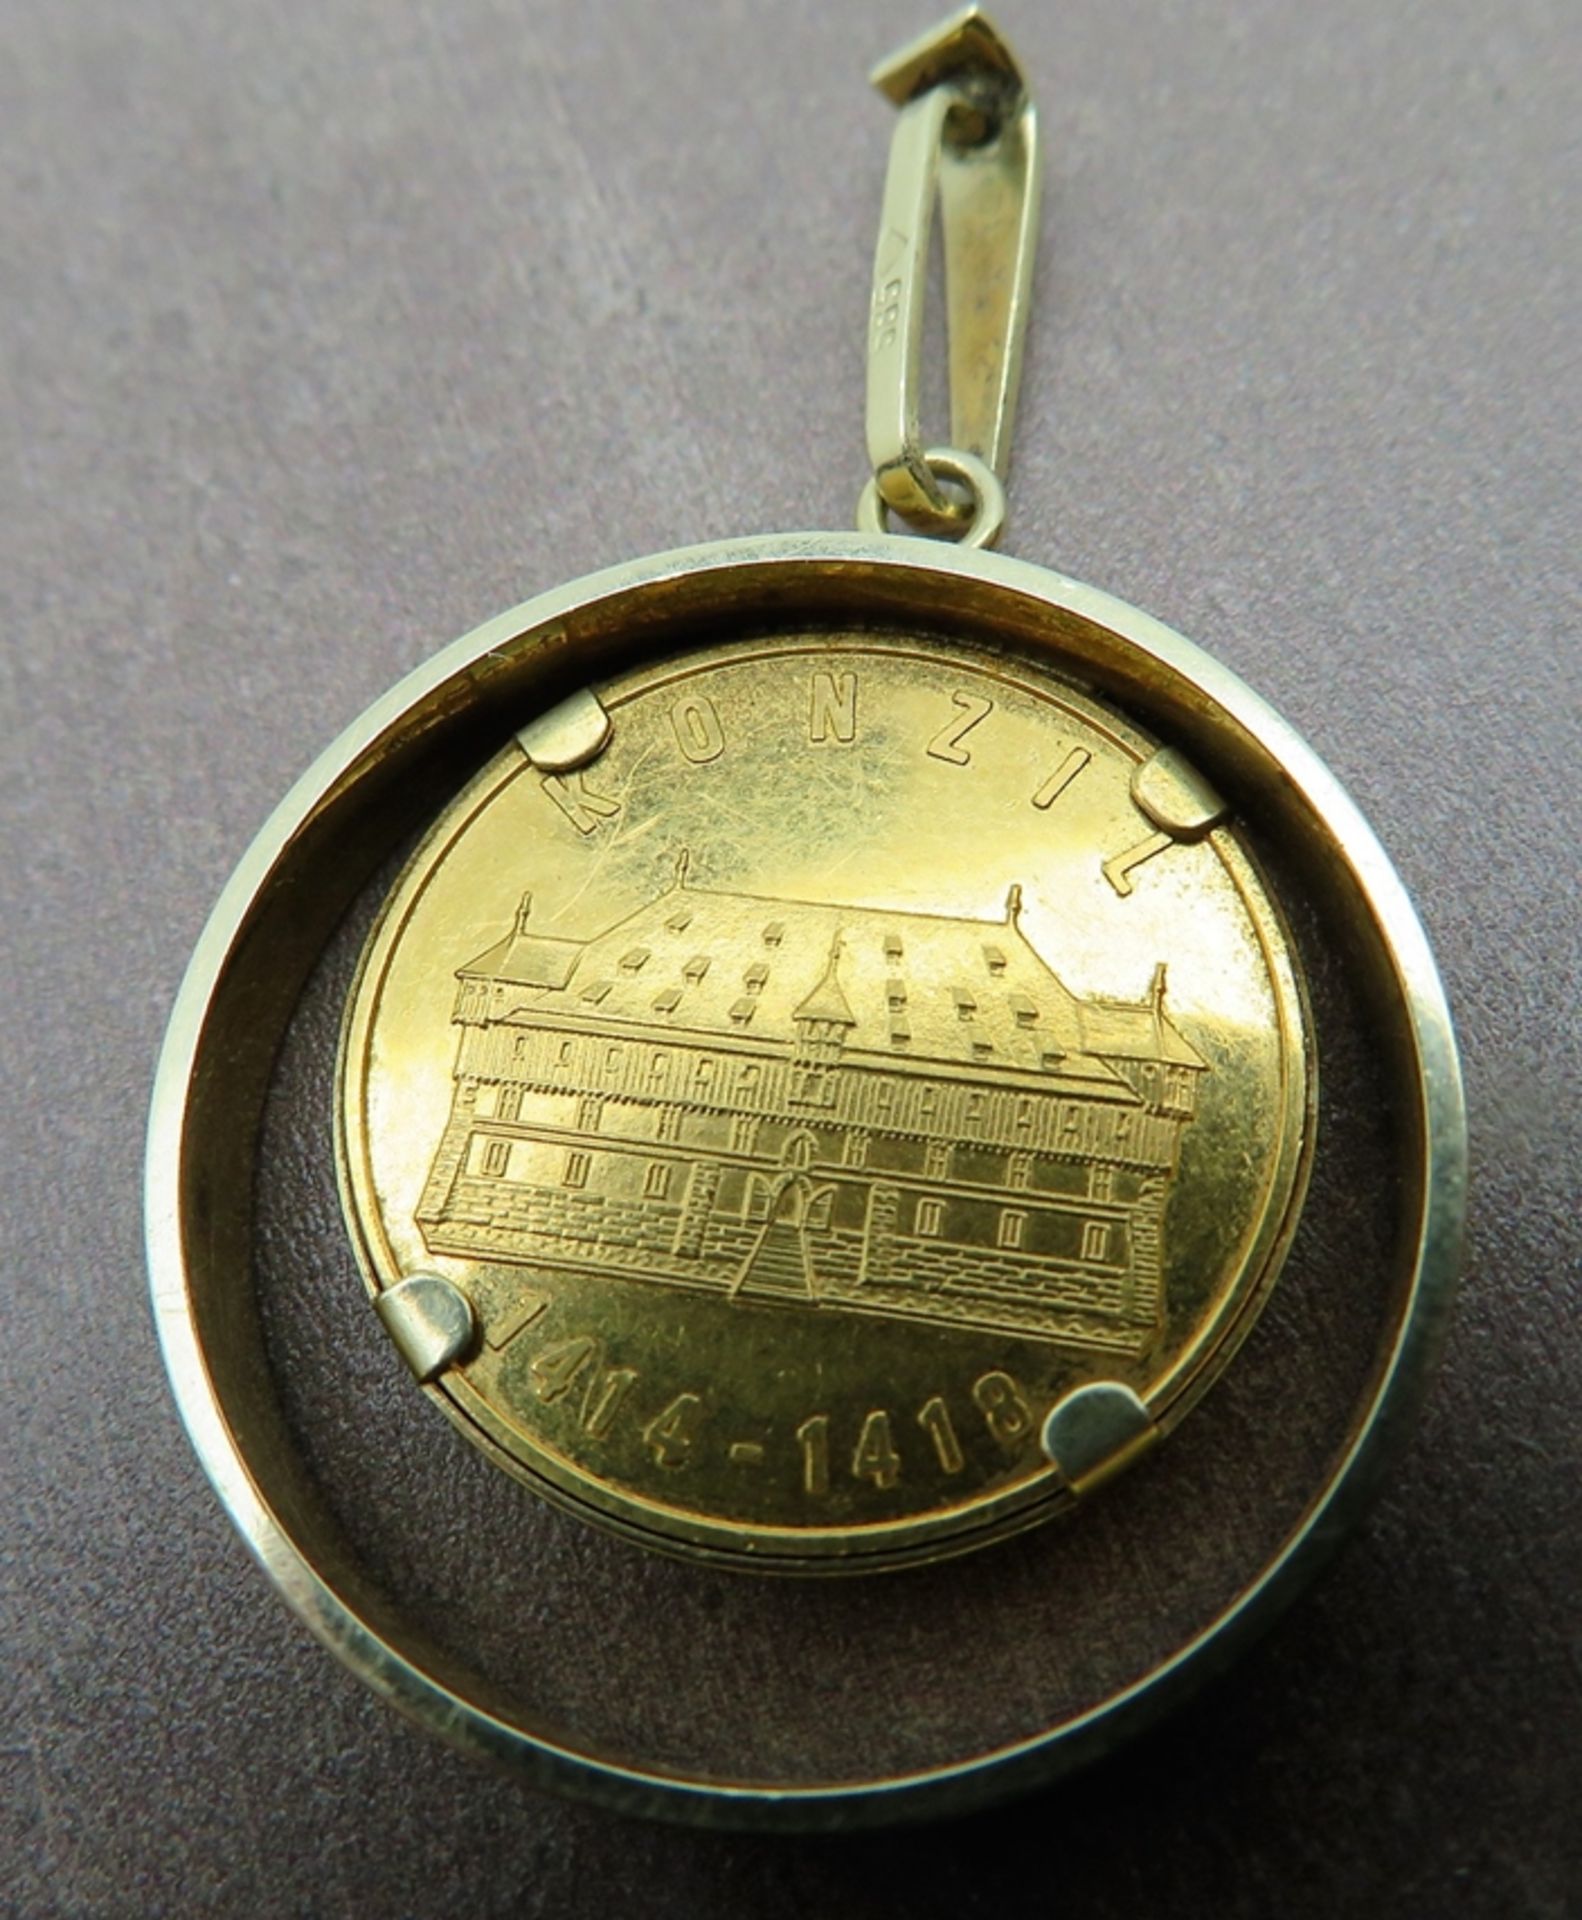 Anhänger mit Gedenkmedaille, Konzil zu Konstanz 1414 - 1418, Medaille Gelbgold 986/000, gepunzt, Fa - Bild 2 aus 2